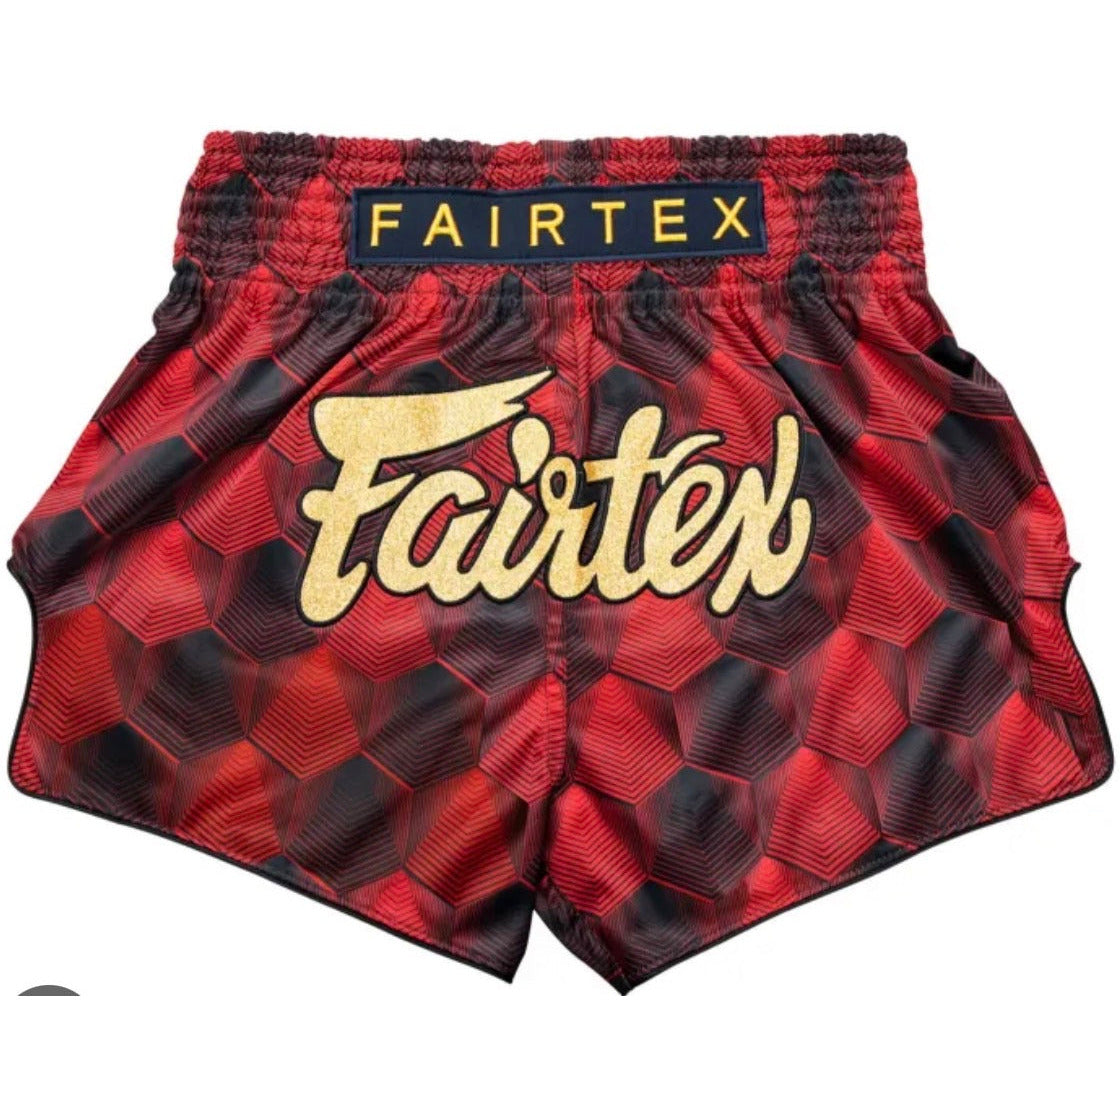 Fairtex BS1919 'Rodtang' Muay Thai Shorts